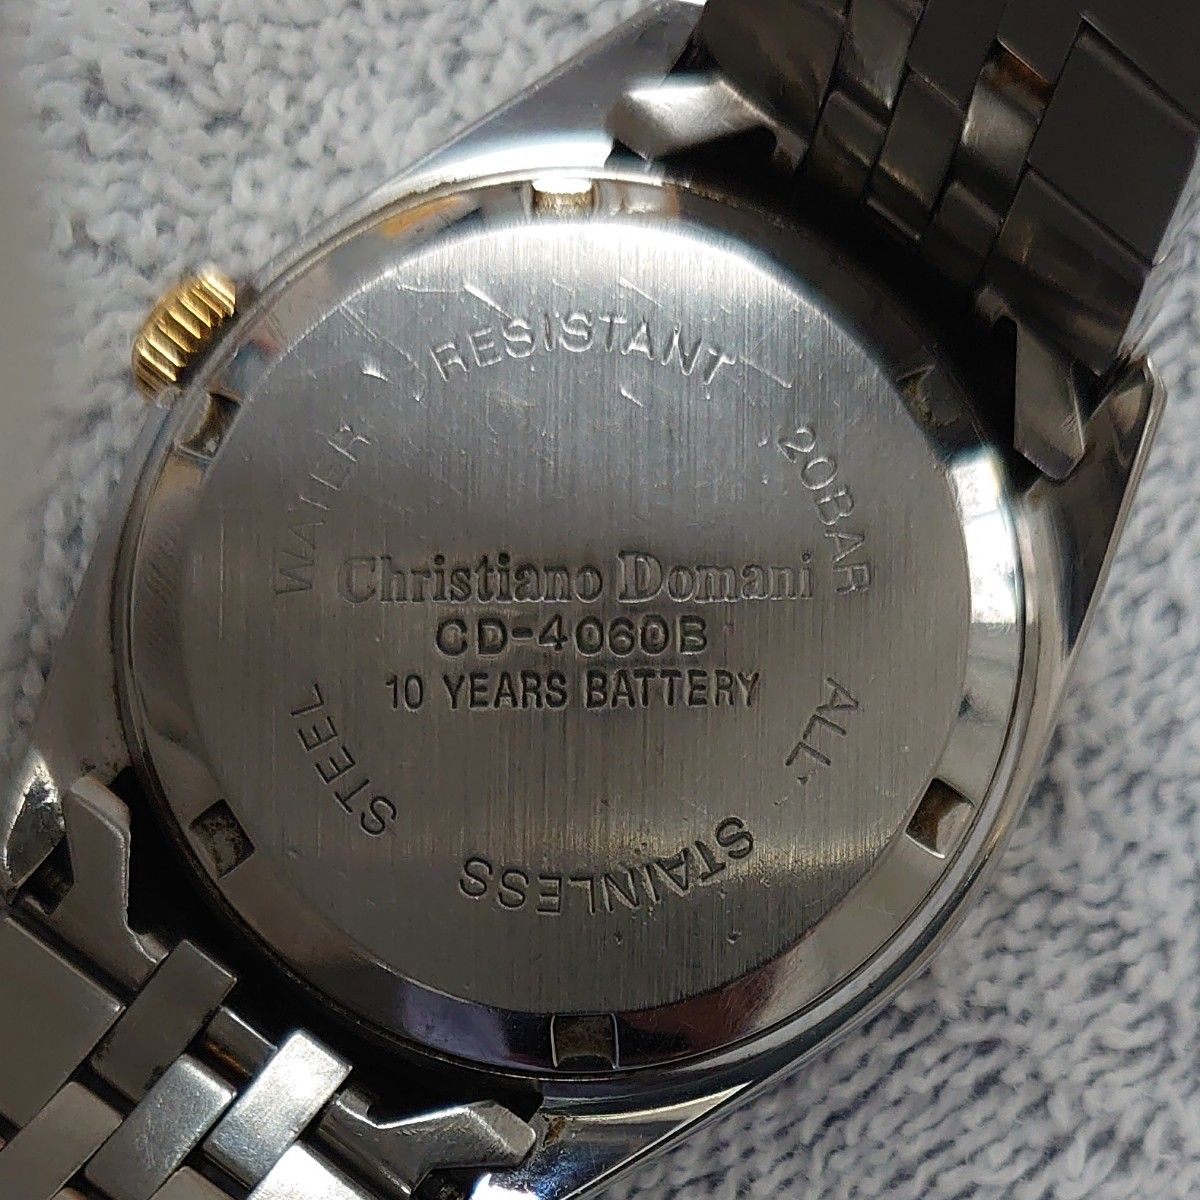 Chrstiano Domani クリスチャーノドマーニ  腕時計 クオーツ メンズ腕時計 CD-4060B 電池交換が必要